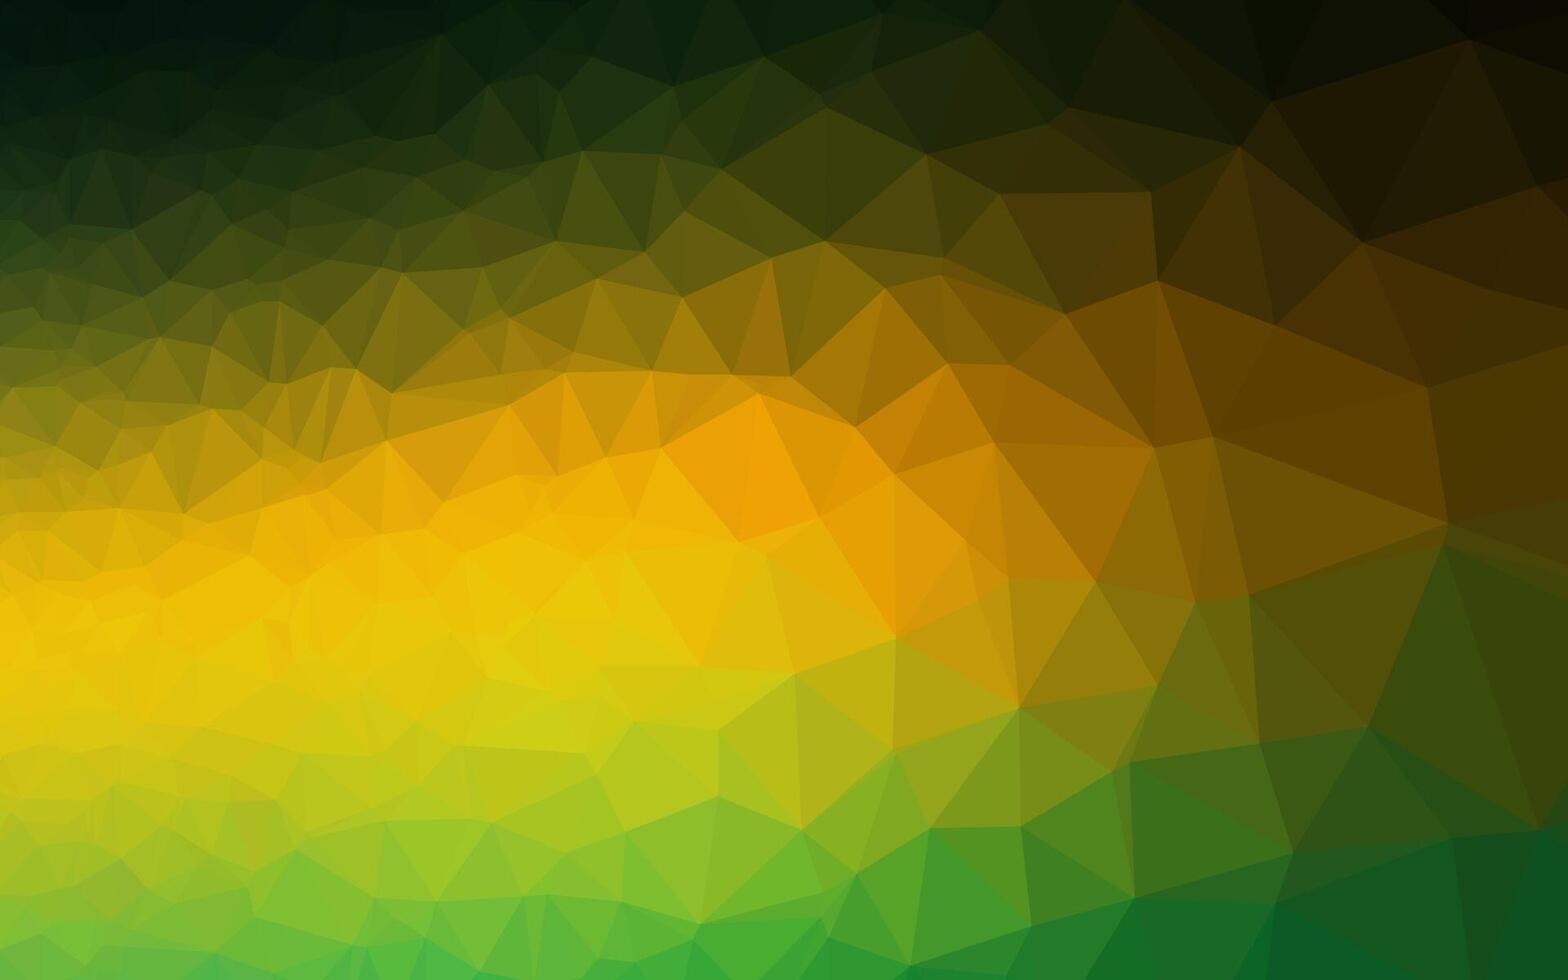 diseño poligonal abstracto vector verde oscuro, amarillo.